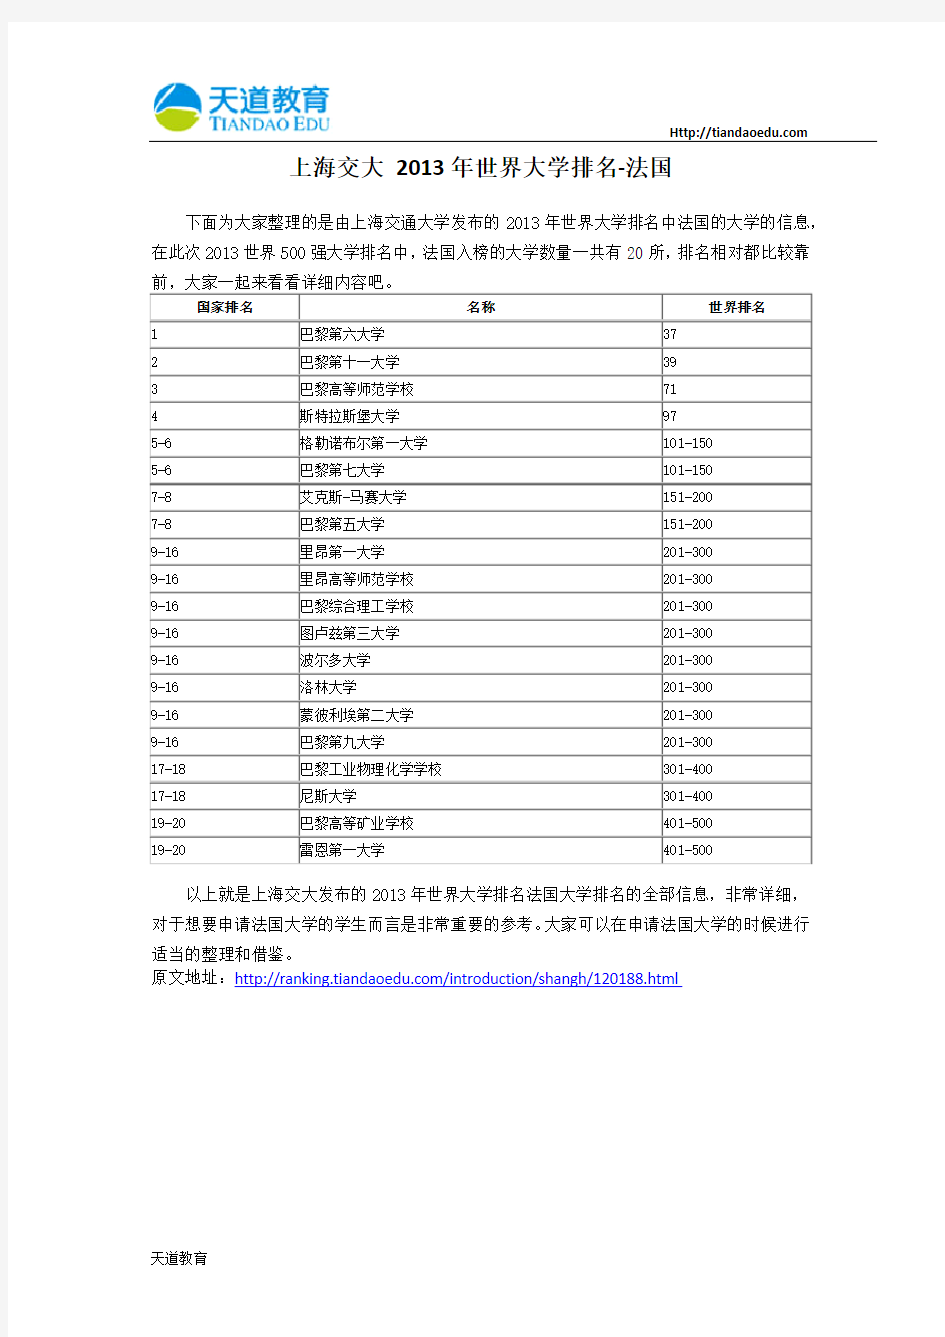 【天道独家】上海交大 2013年世界大学排名-法国